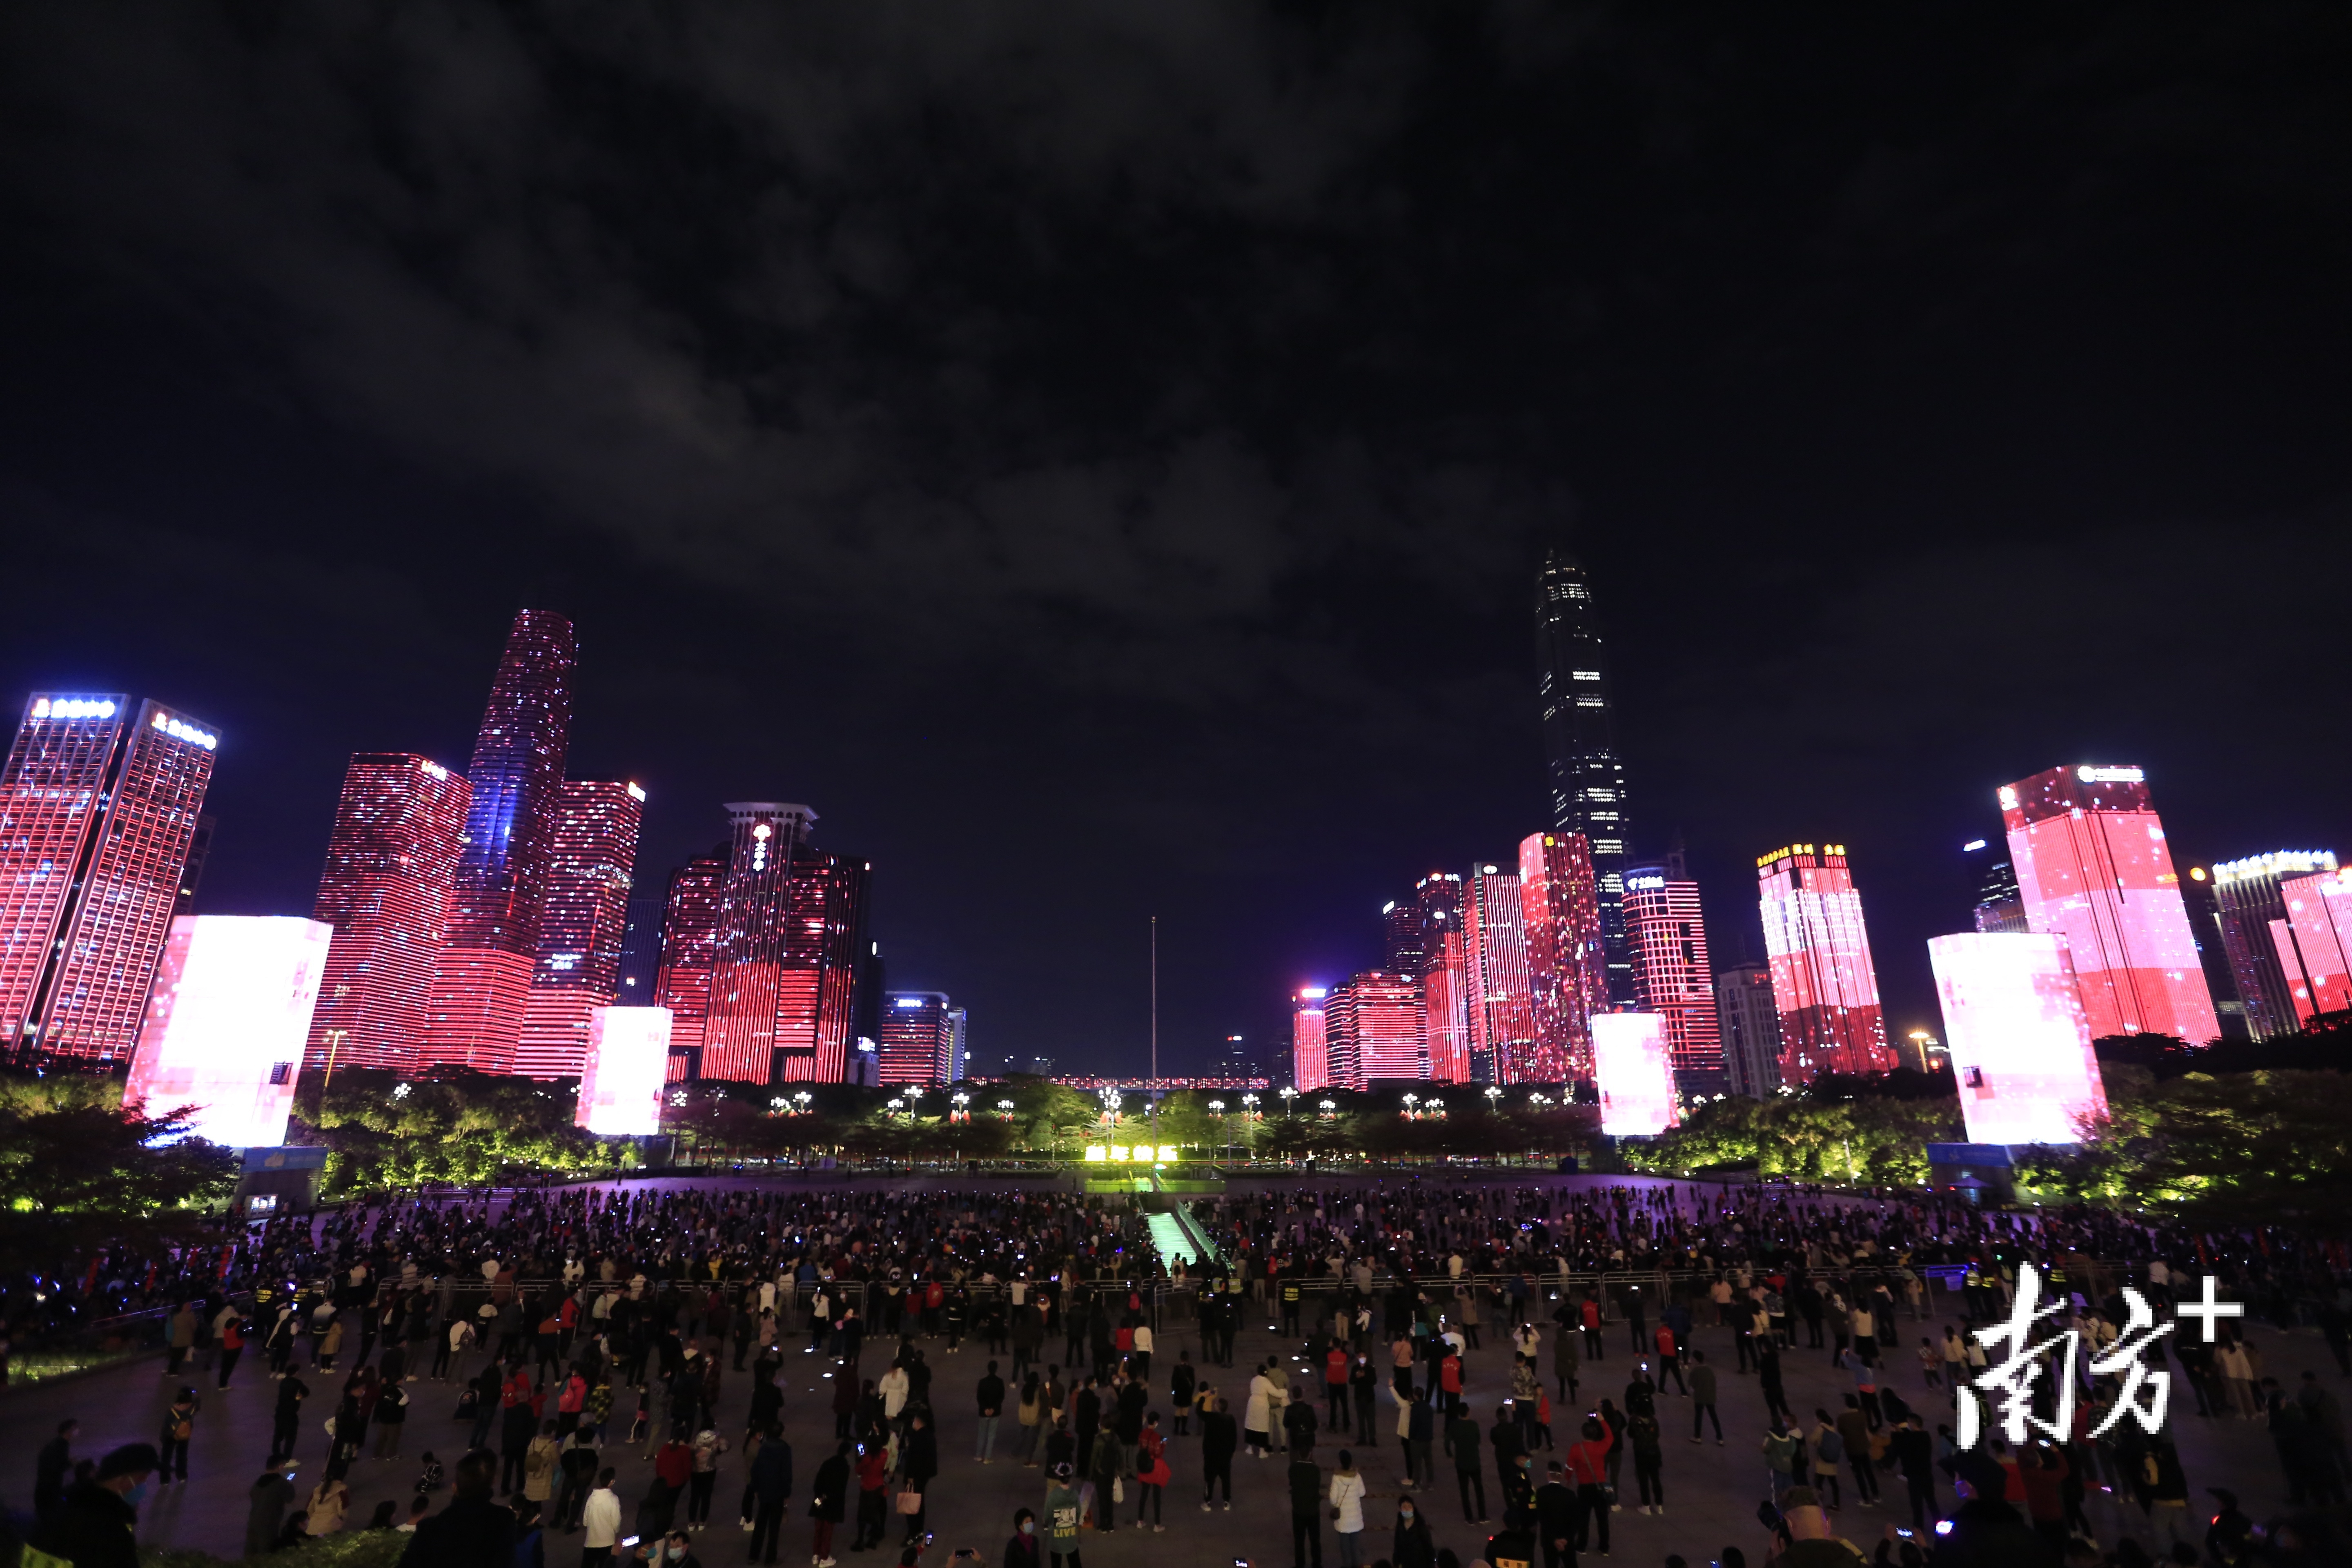 深圳市民中心夜景图片